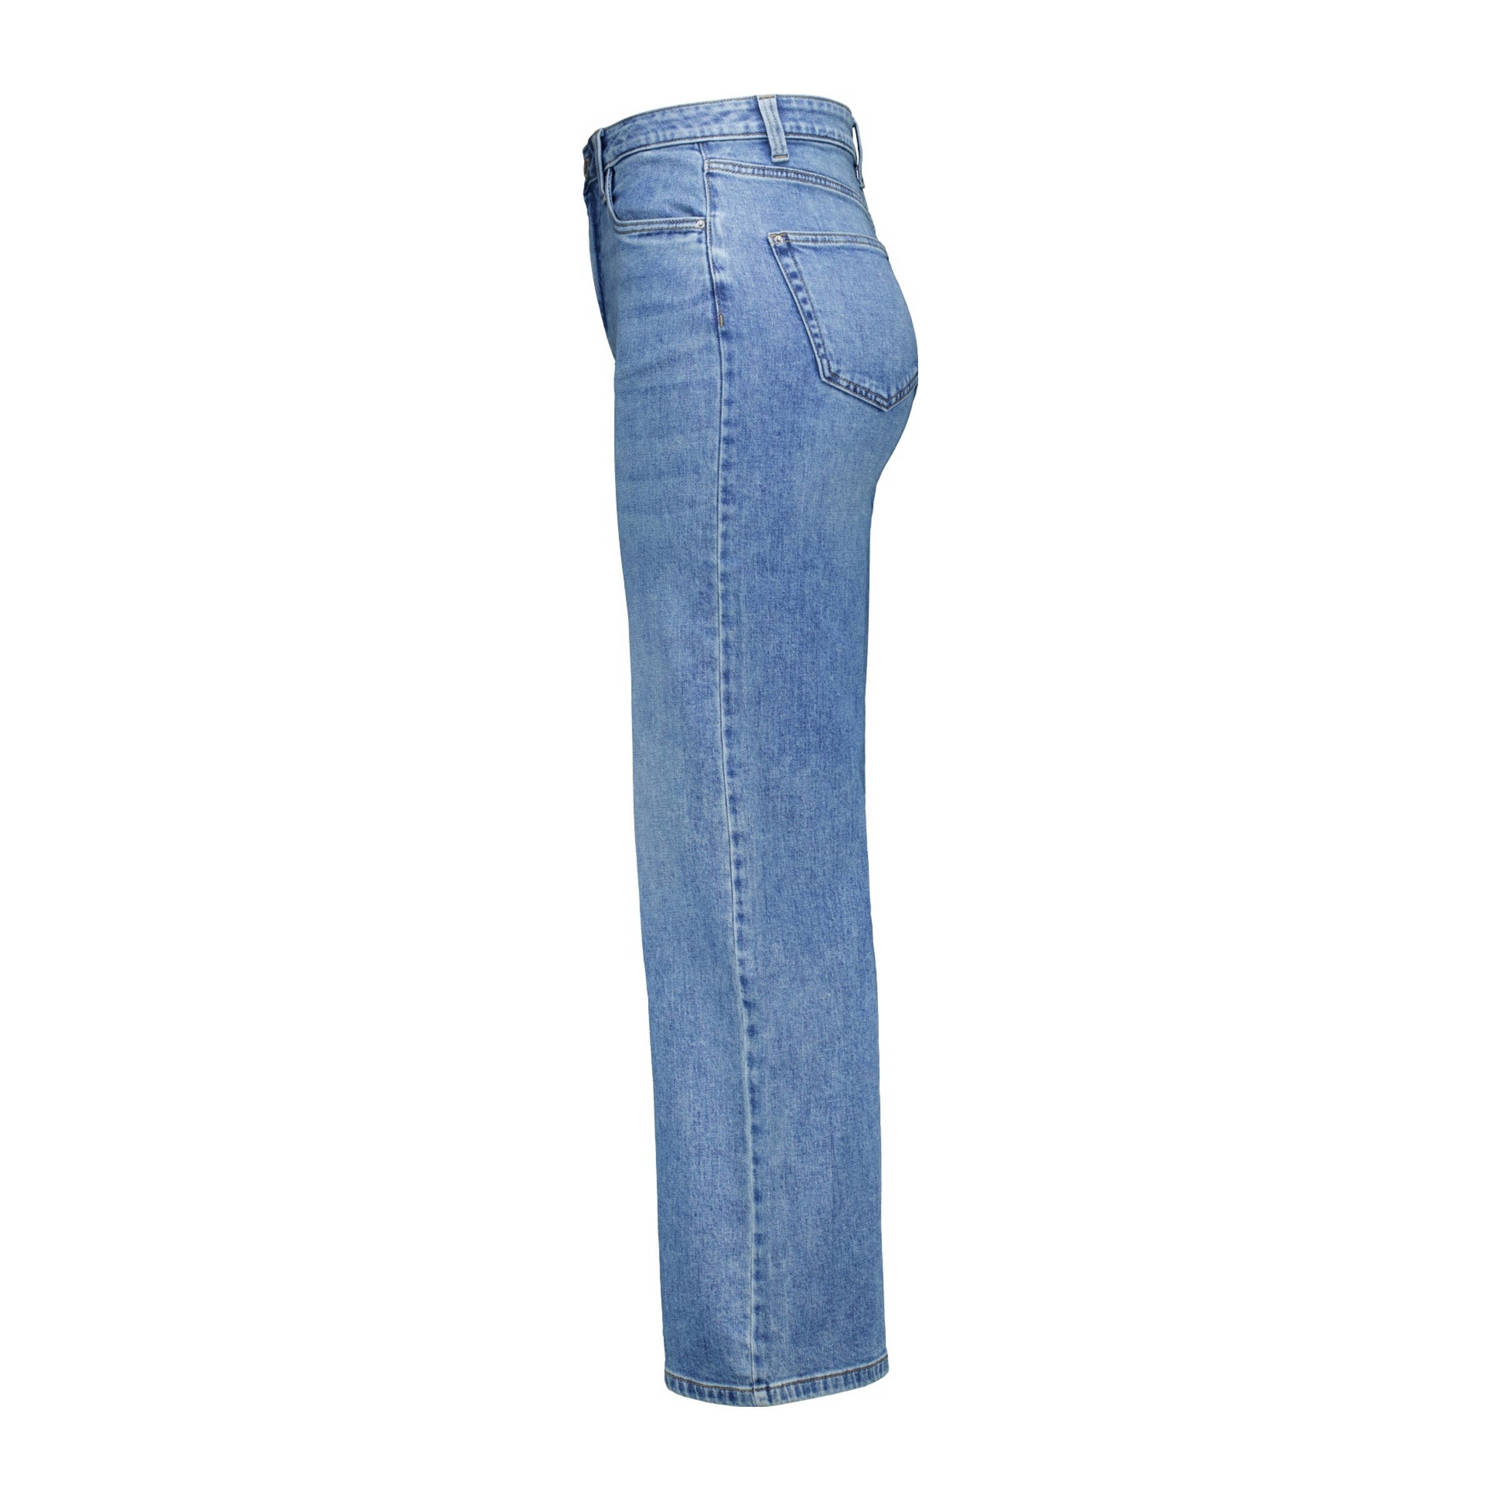 MS Mode high waist wide leg jeans light blue denim